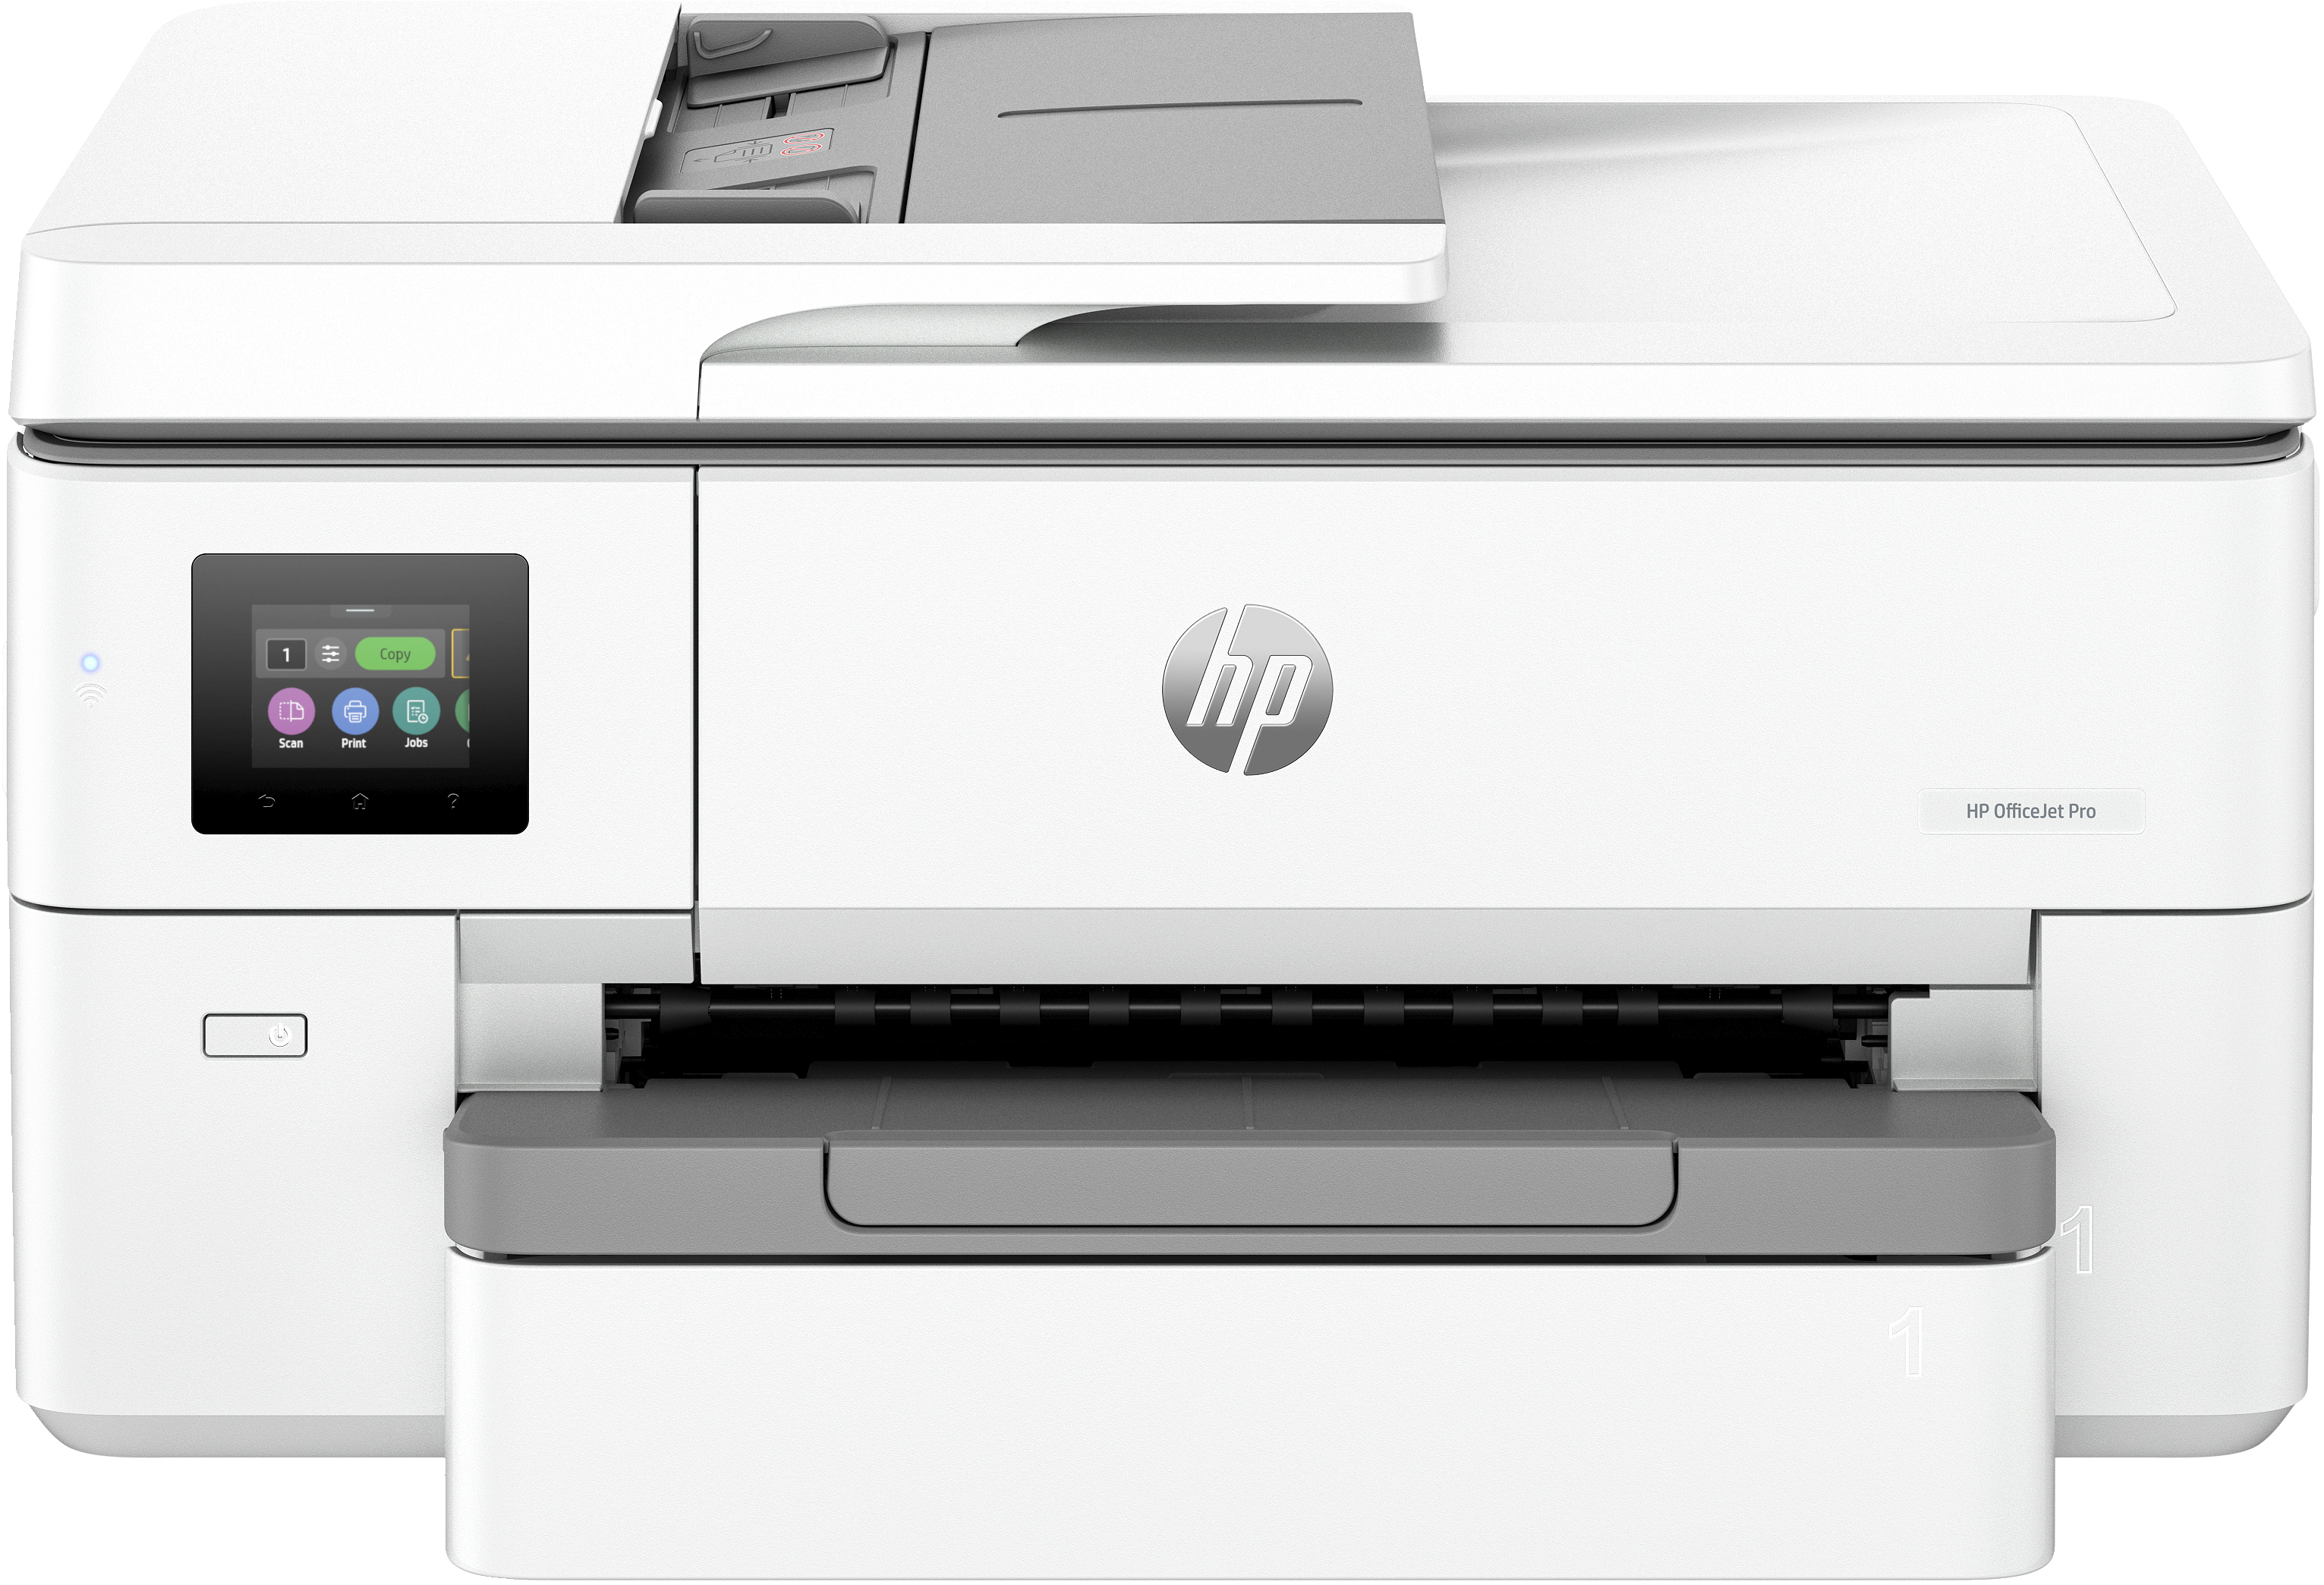 HP HP OfficeJet Pro 9720e Wide Format All-in-One printer, Kleur, Printer voor Kleine kantoren, Printen, kopi&#235;ren, scannen, HP+; geschikt voor HP Instant Ink; draadloos; dubbelzijdig printen; automatische documentinvoer; printen vanaf telefoon of tablet; scannen naar e-mail; scannen naar pdf; touchscreen; stille modus